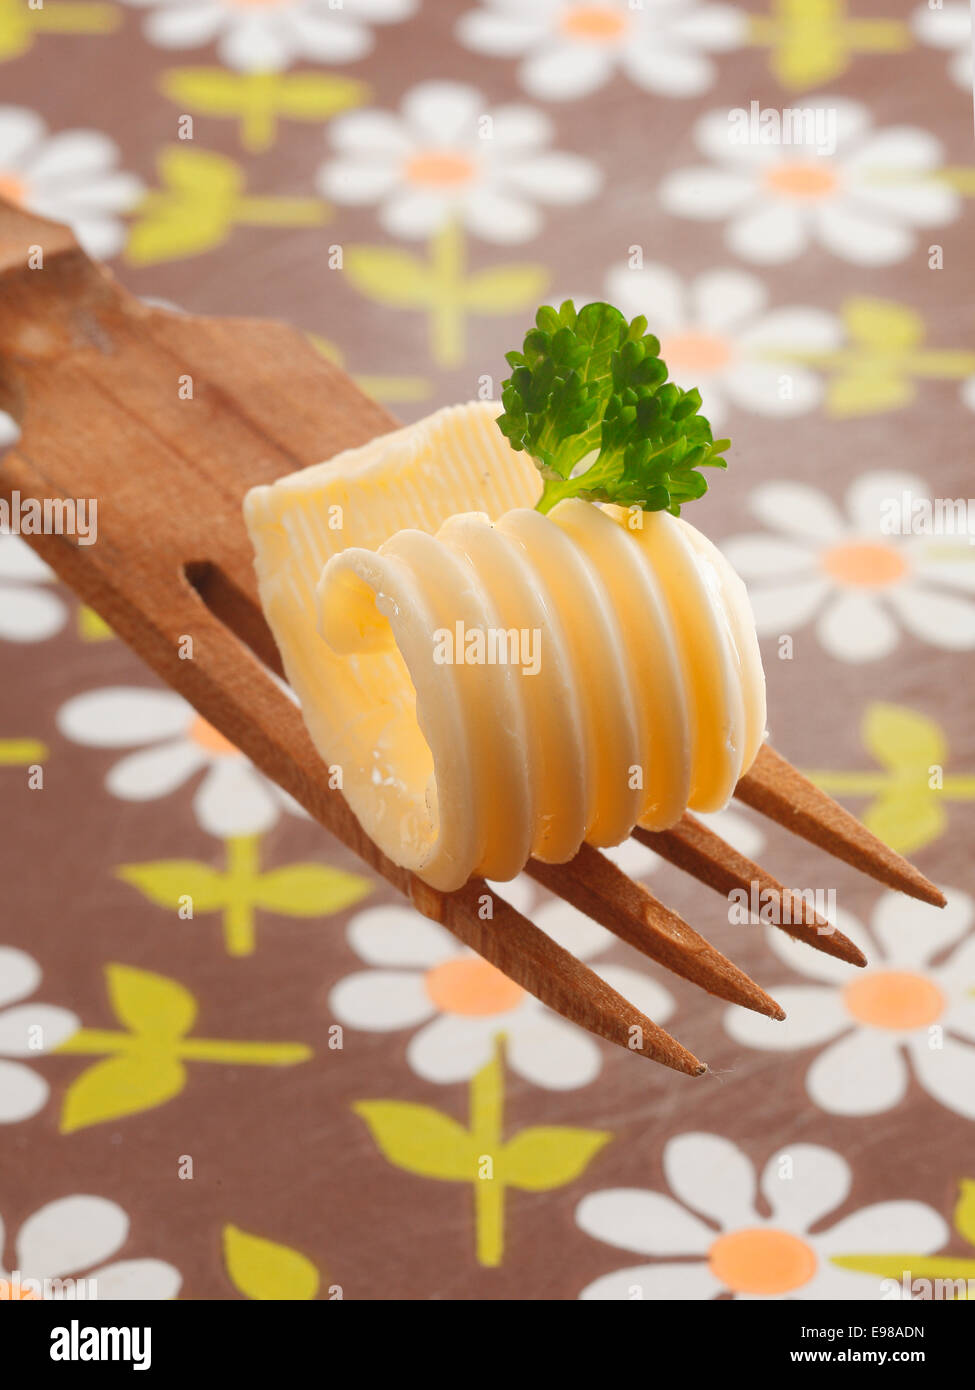 Arricciatura decorativa di laminati di burro o margarina guarnito con menta fresca offerti su una insalata in legno forcella con una tovaglia di floral background Foto Stock